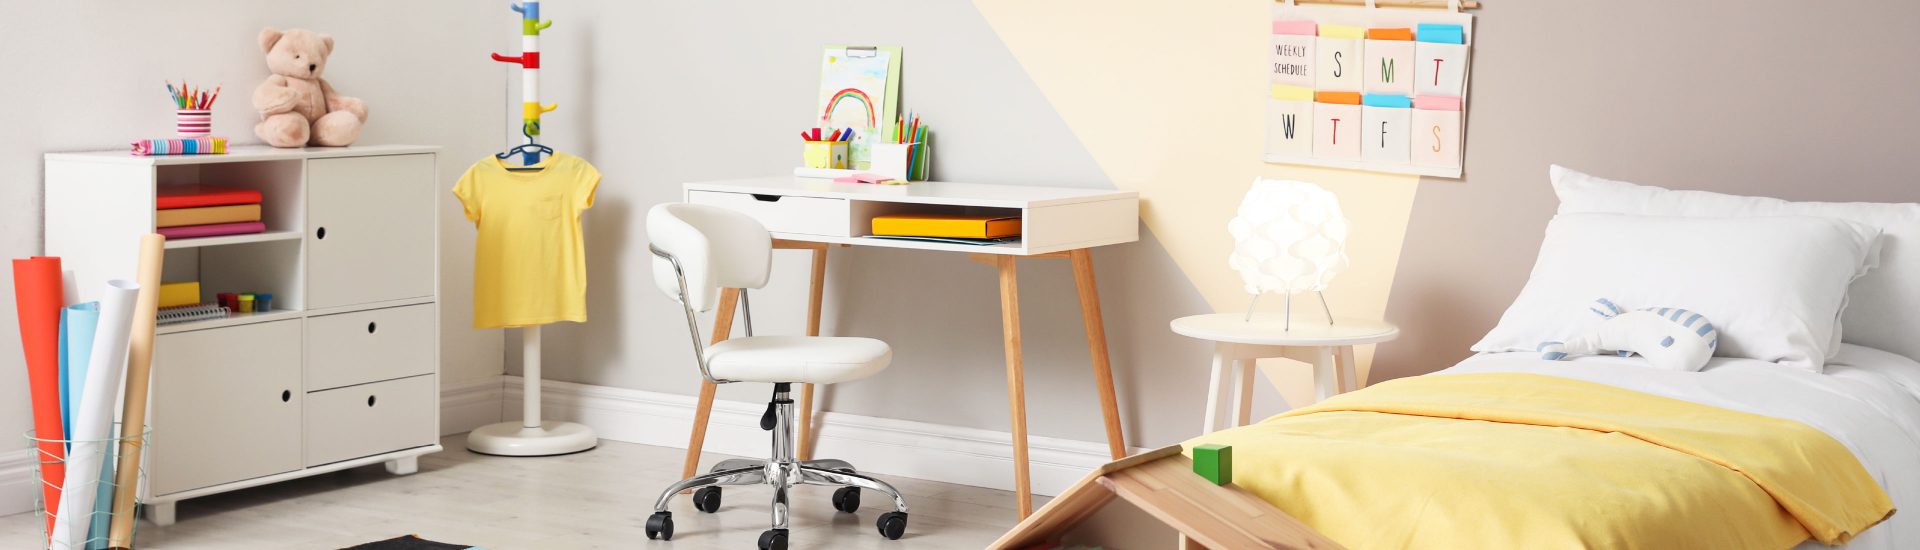 Vuelta al cole: escritorios e ideas para crear zonas de estudio bonitas  para los peques de la casa